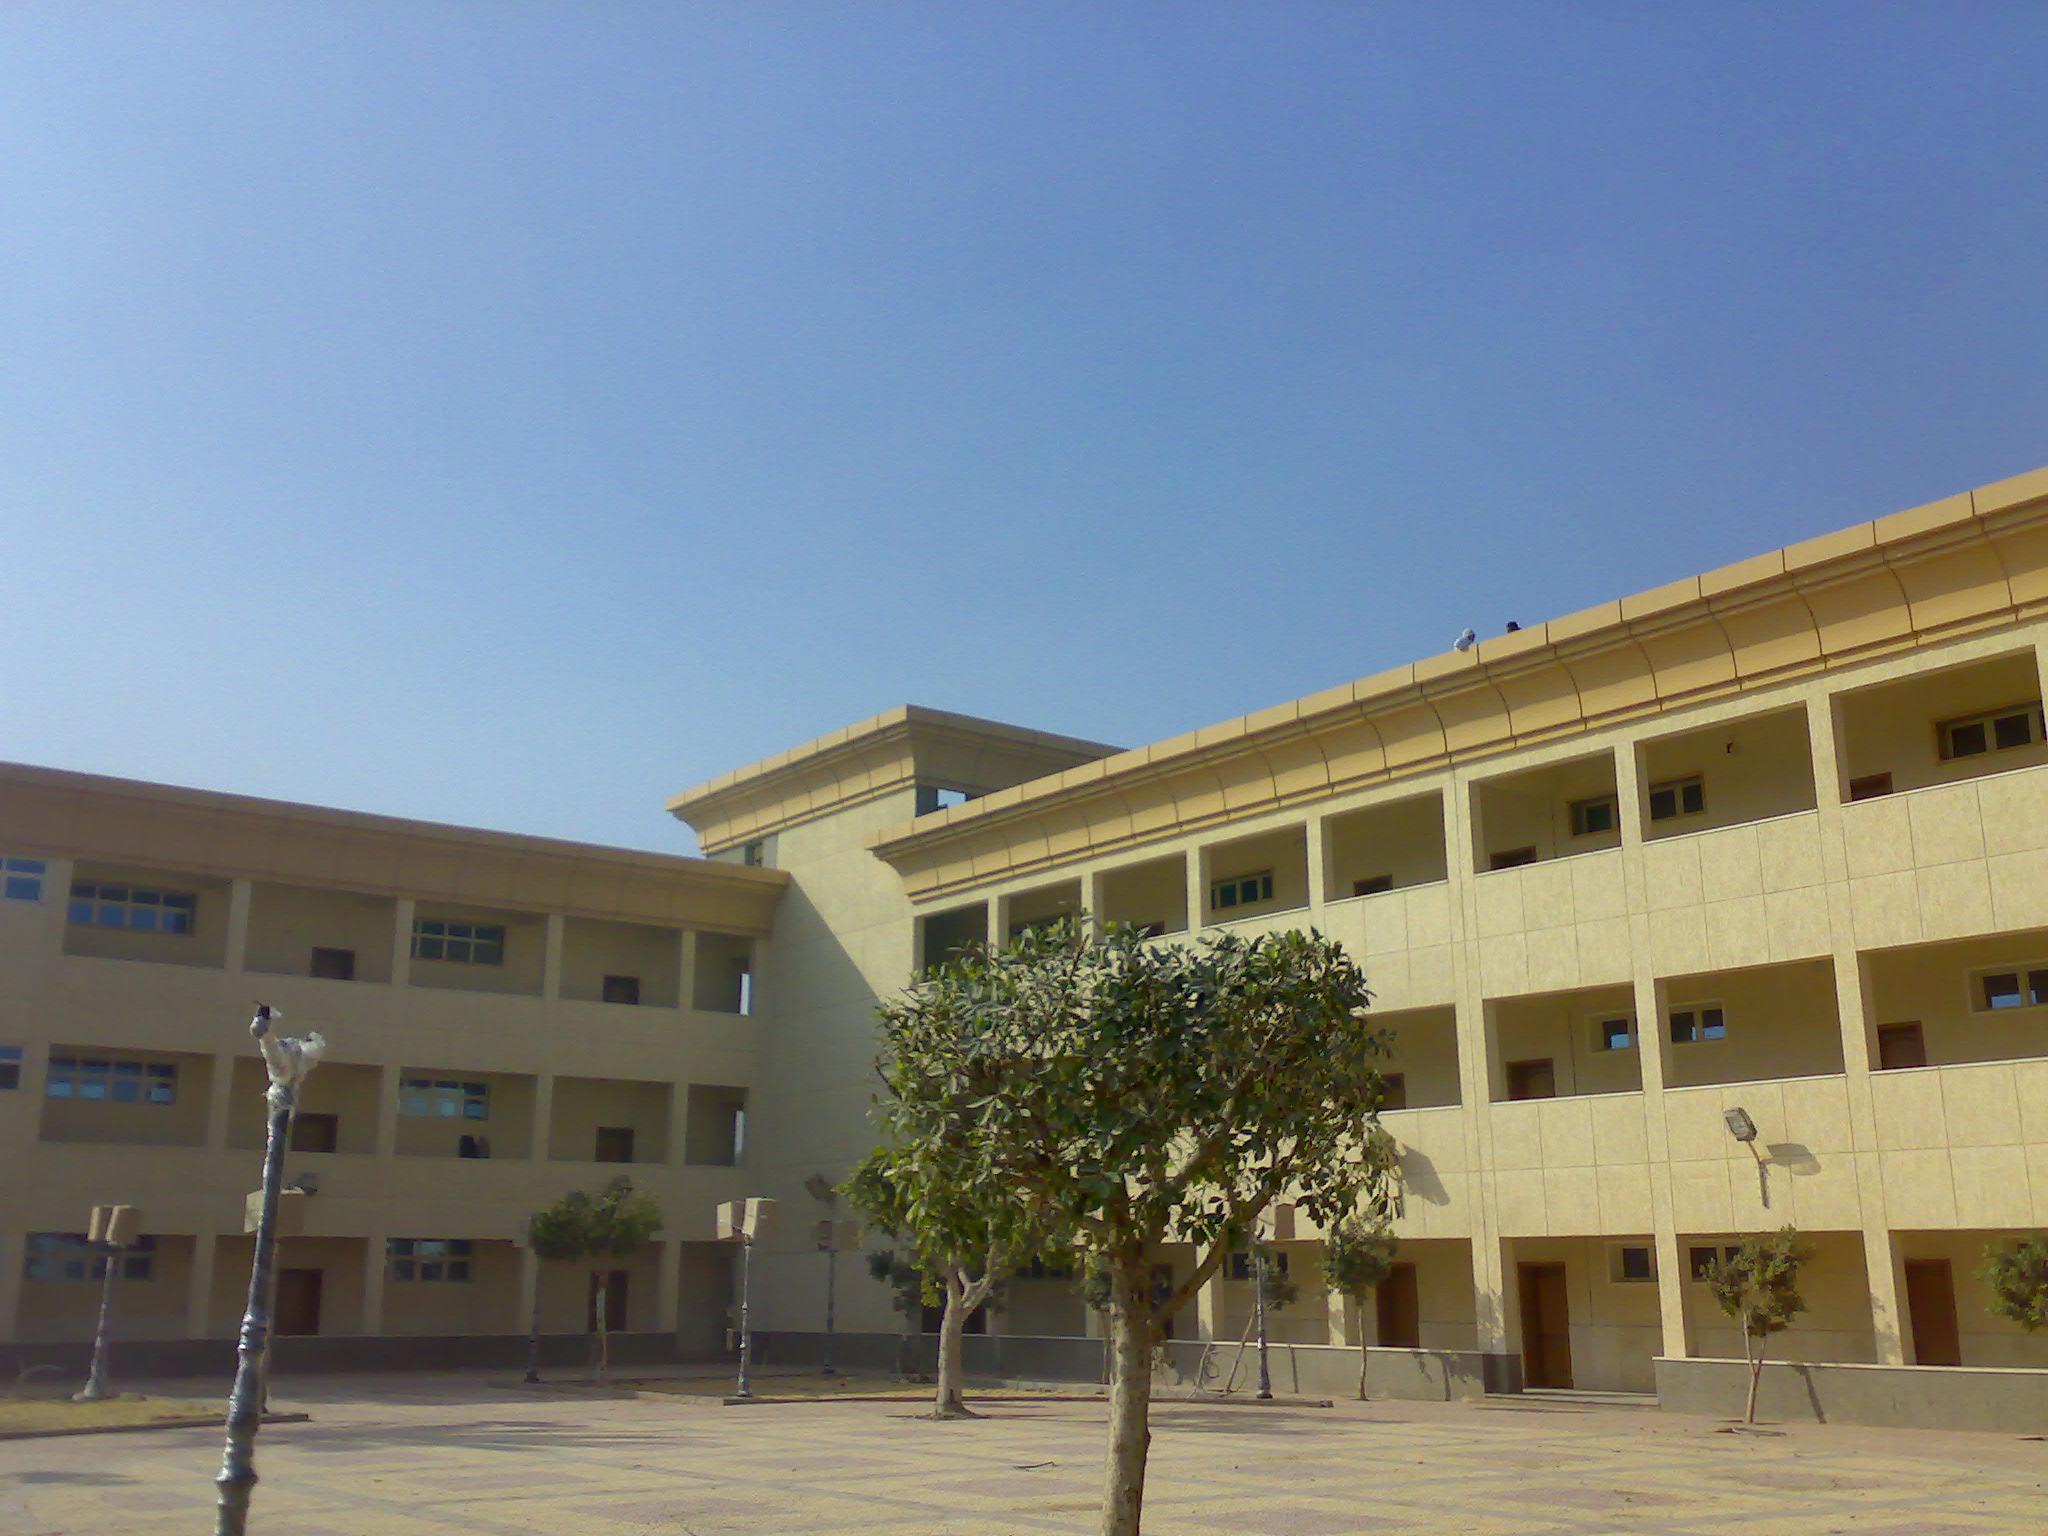 مباني المدرسة والساحة الخاصة بها